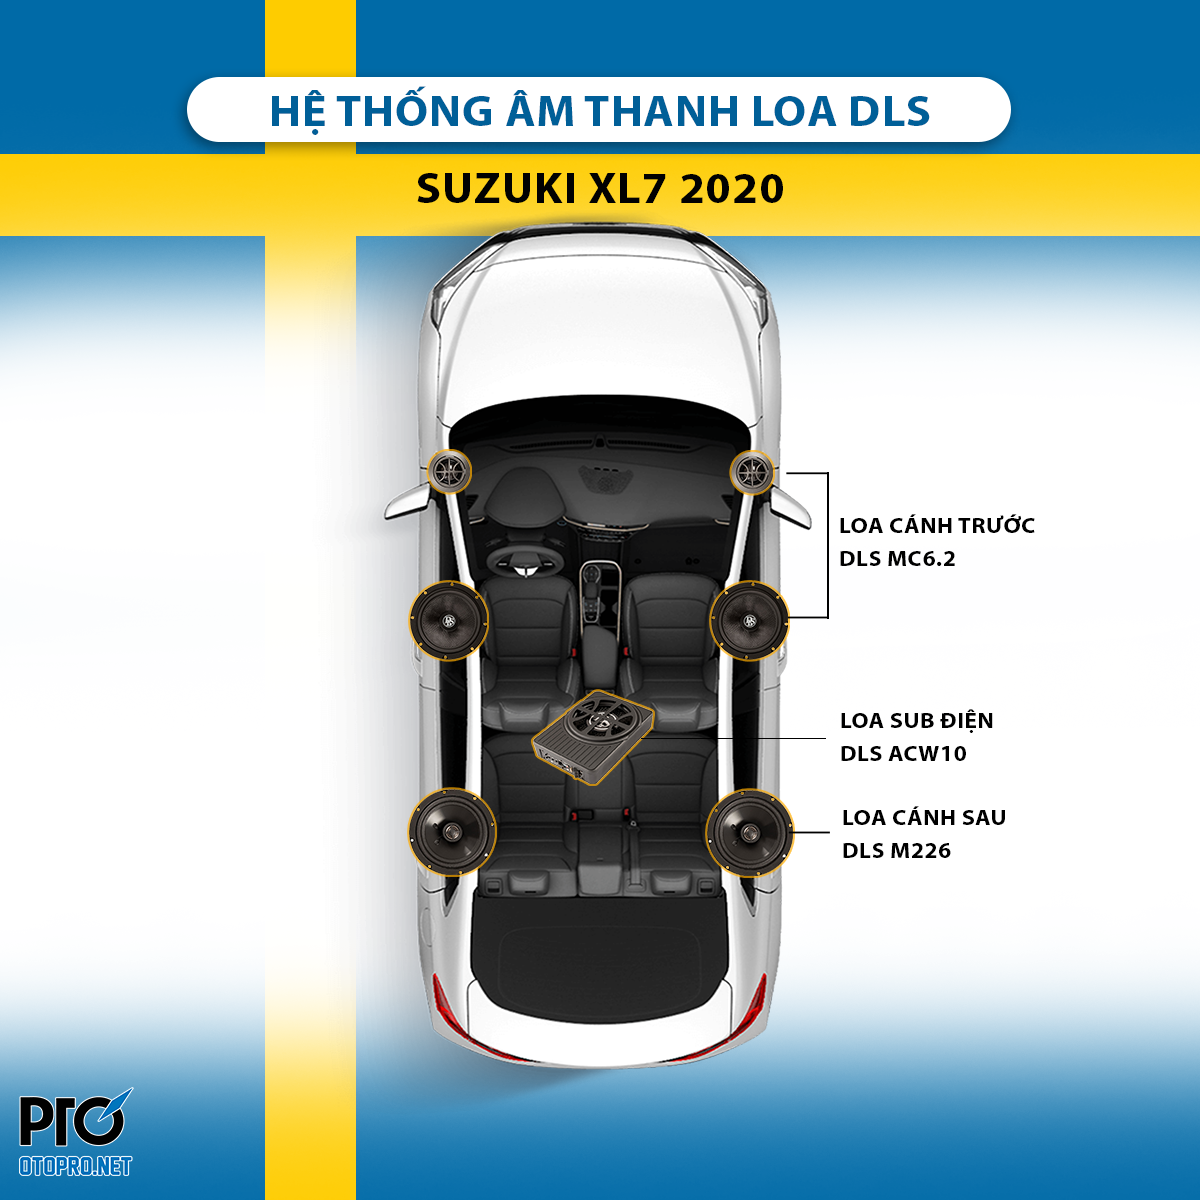 Độ loa Suzuki XL7 2020 với cấu hình âm thanh loa DLS MC6.2